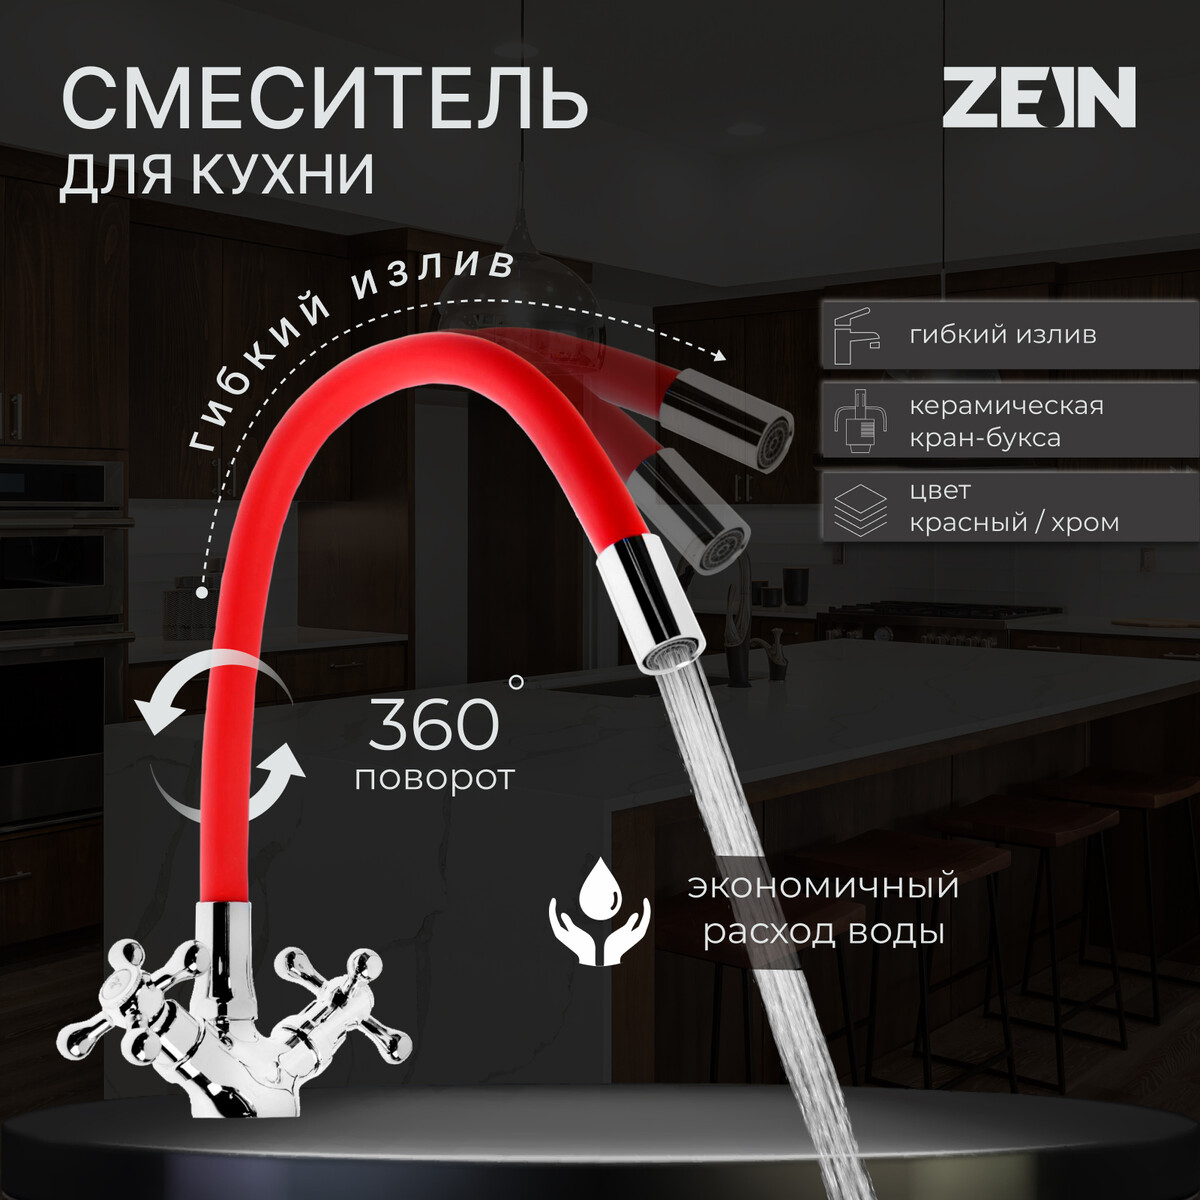 Смеситель для кухни zein z2106, двухвентильный, силиконовый излив, красный/хром